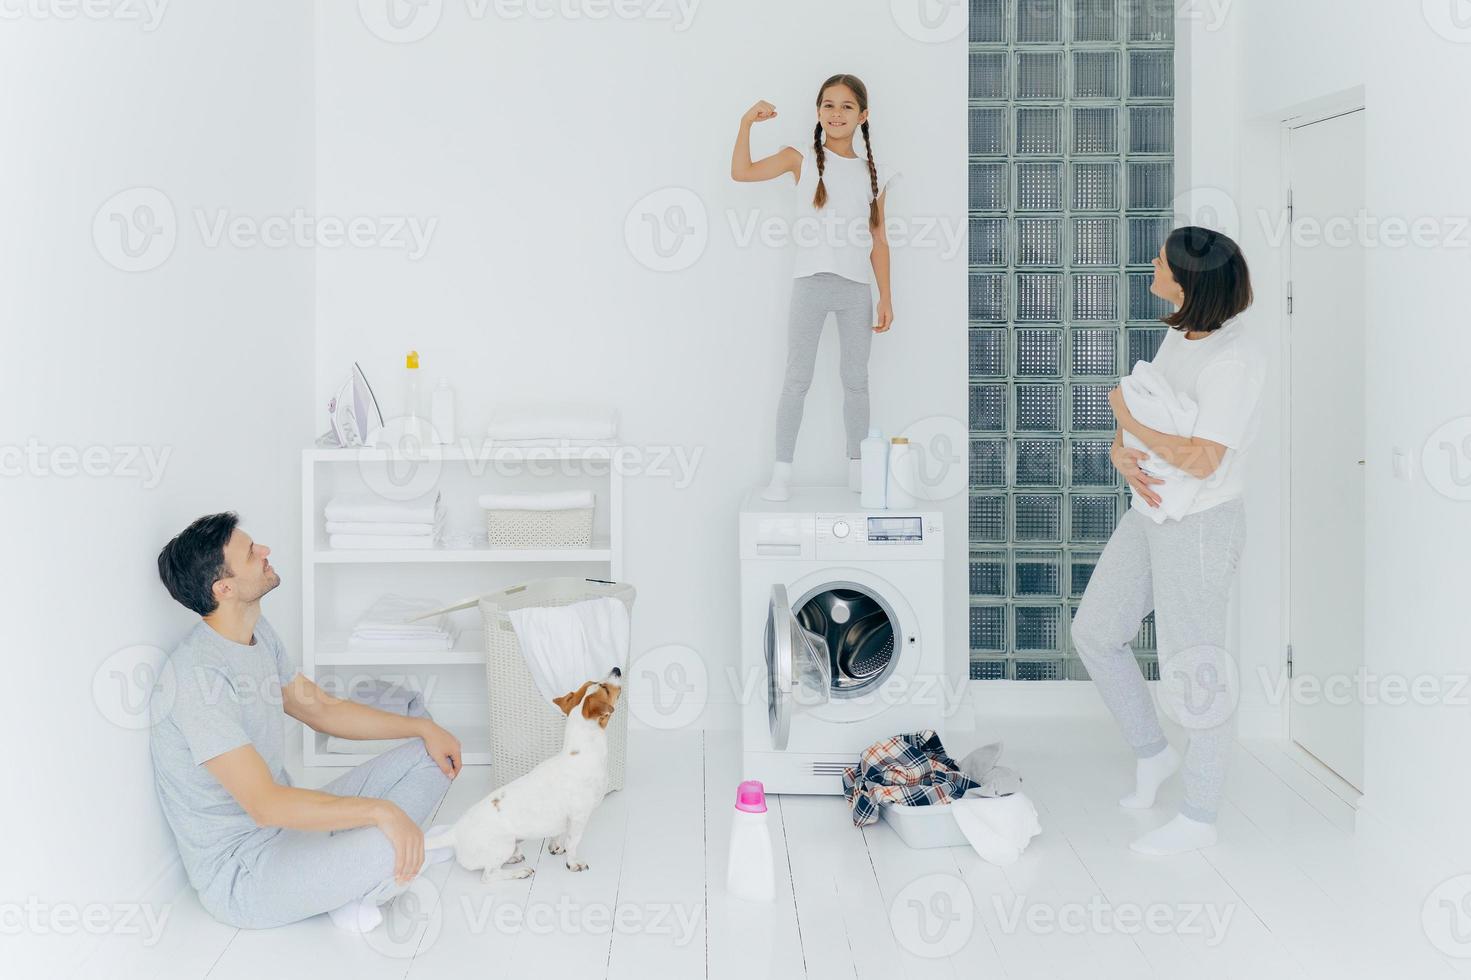 sterk vrolijk meisje heft arm op, toont biceps, amuseert ouders, pauze na het wassen van kleding, poseert in ruime witte wasruimte met huisdier, wasmachine en schoonmaakmiddelen. gezin en huishoudelijk werk foto